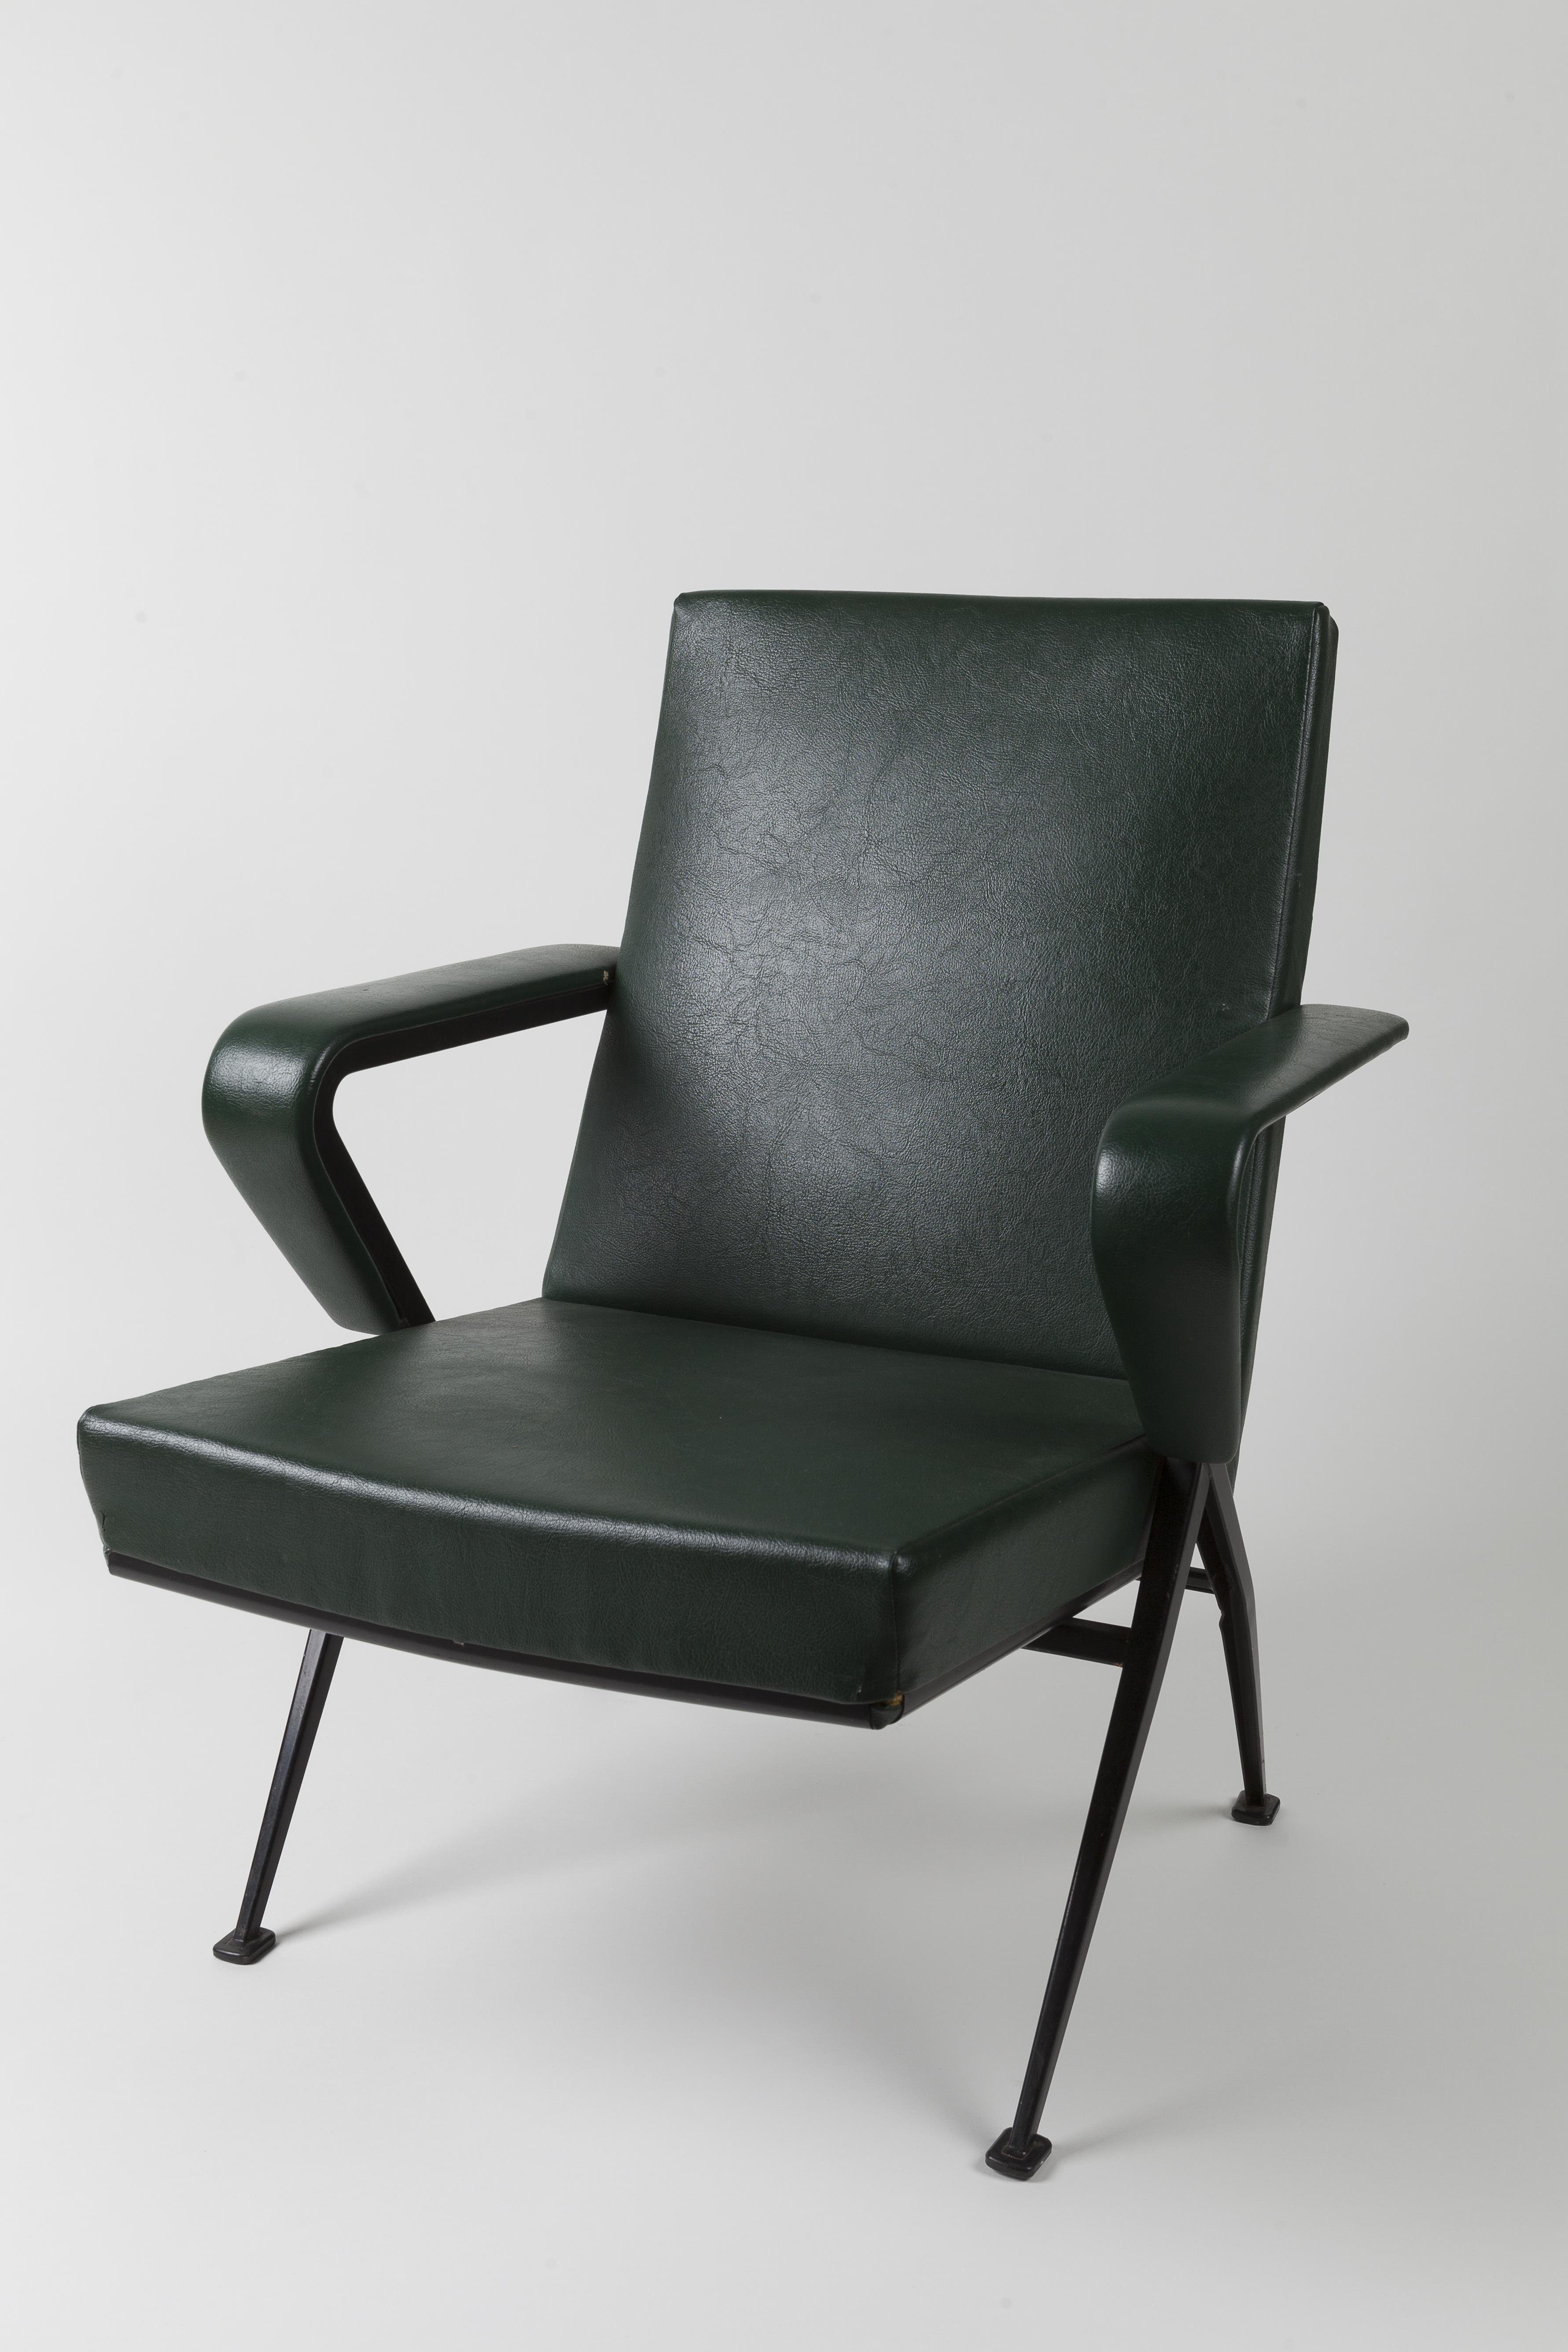 nemen Persoonlijk Gedeeltelijk Stoel (repose fauteuil) — Centraal Museum Utrecht